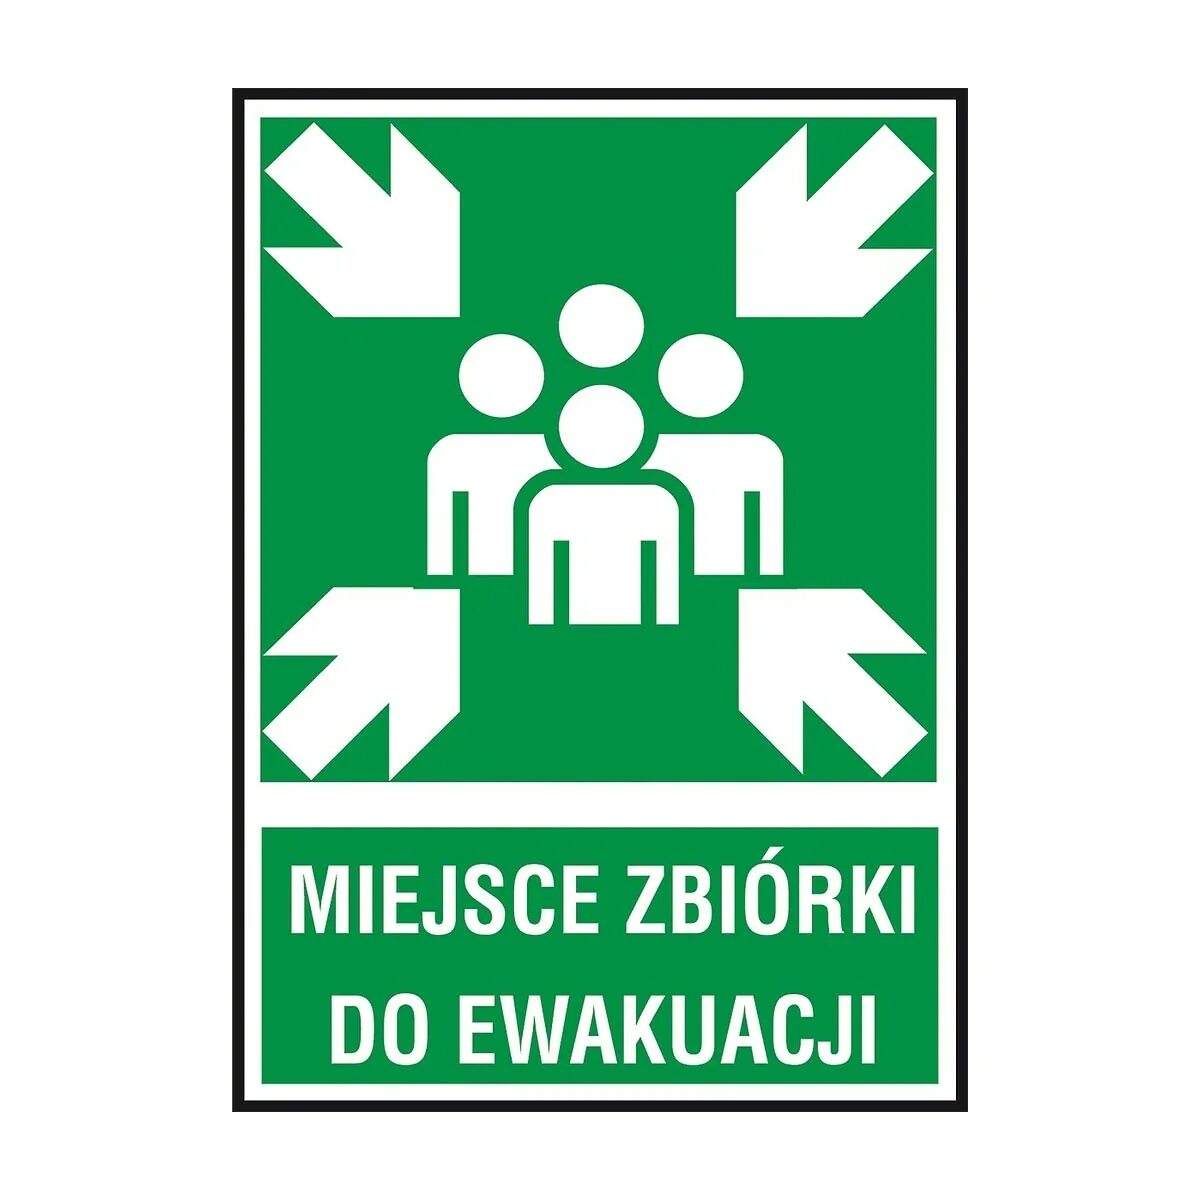 Знак сбора при эвакуации